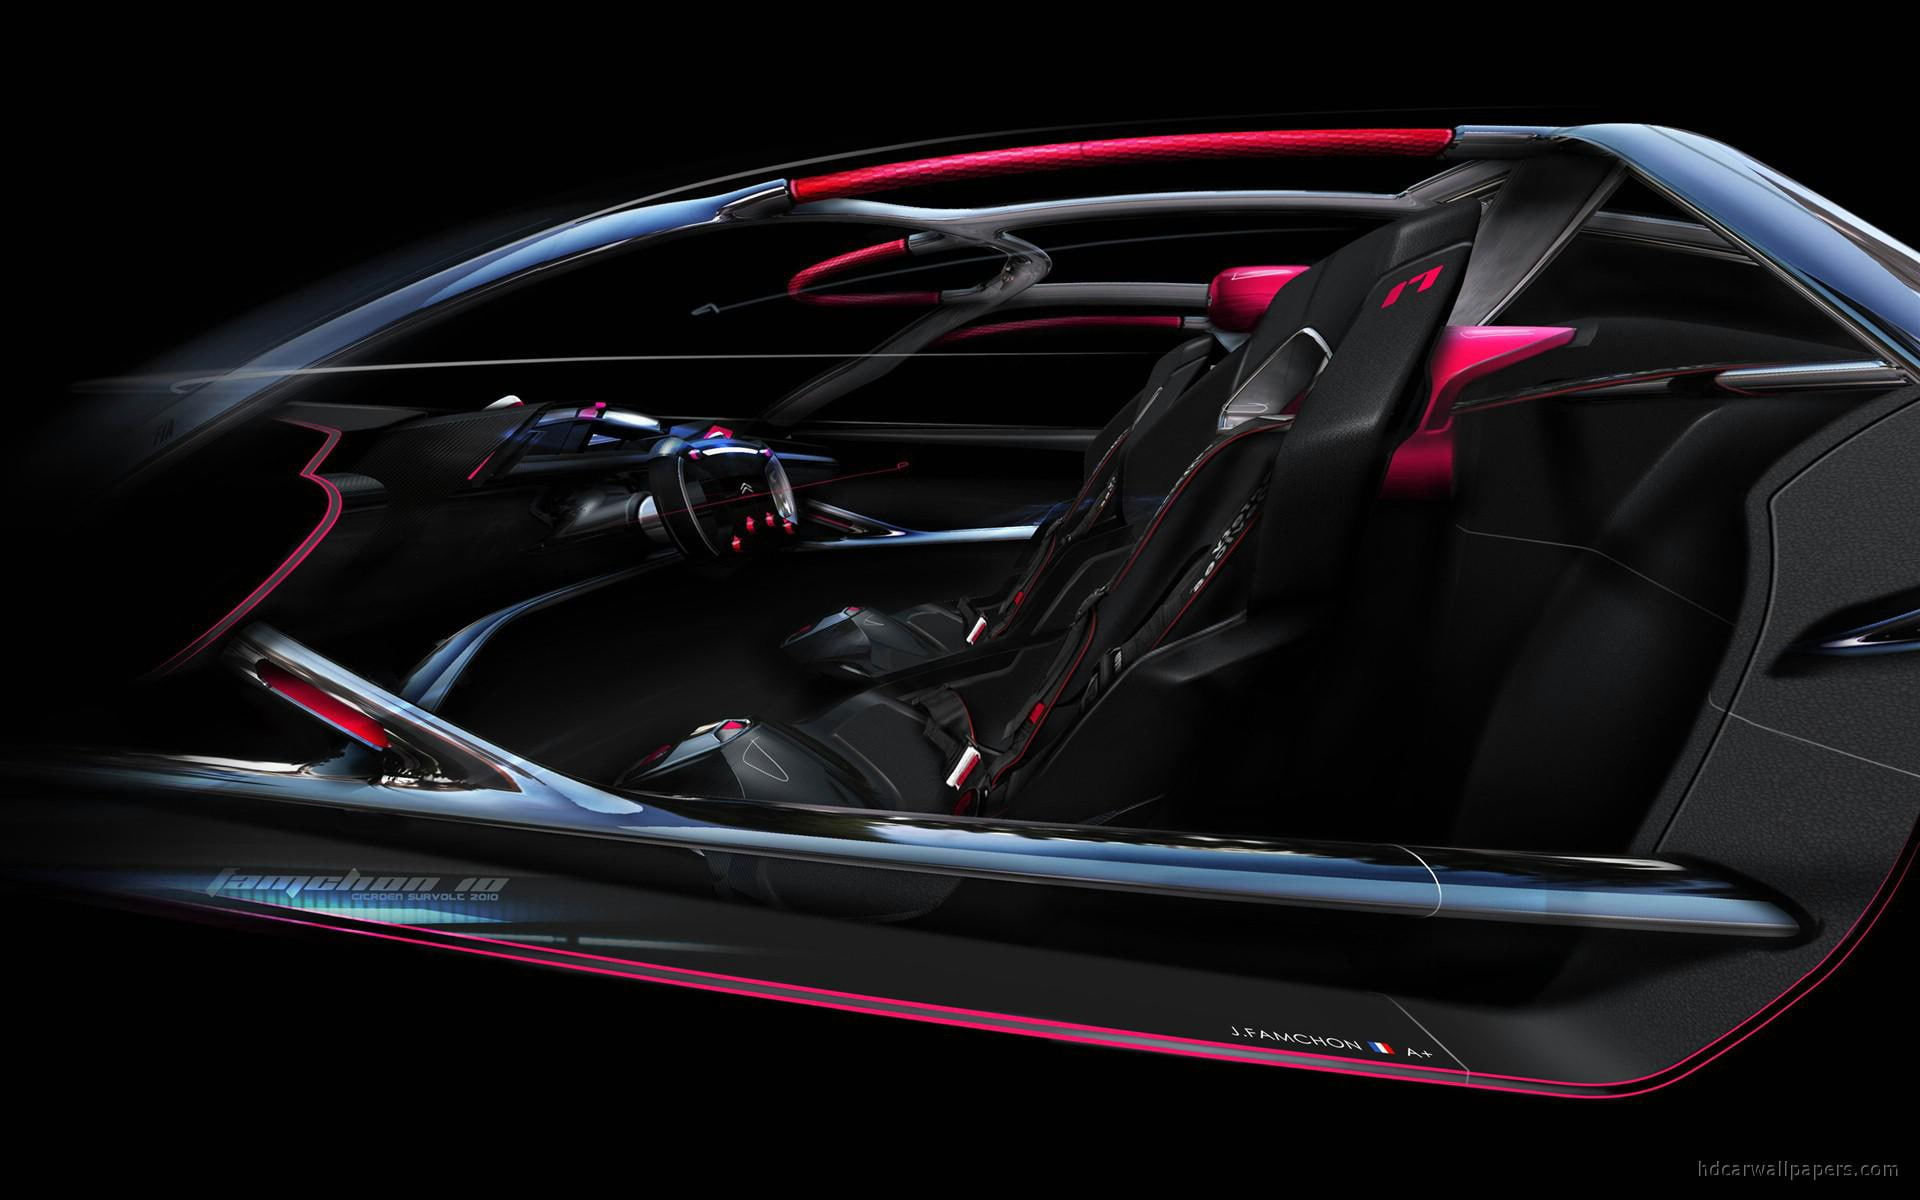 2010 Citroen Survolt Concept Interior, black sports car, cars